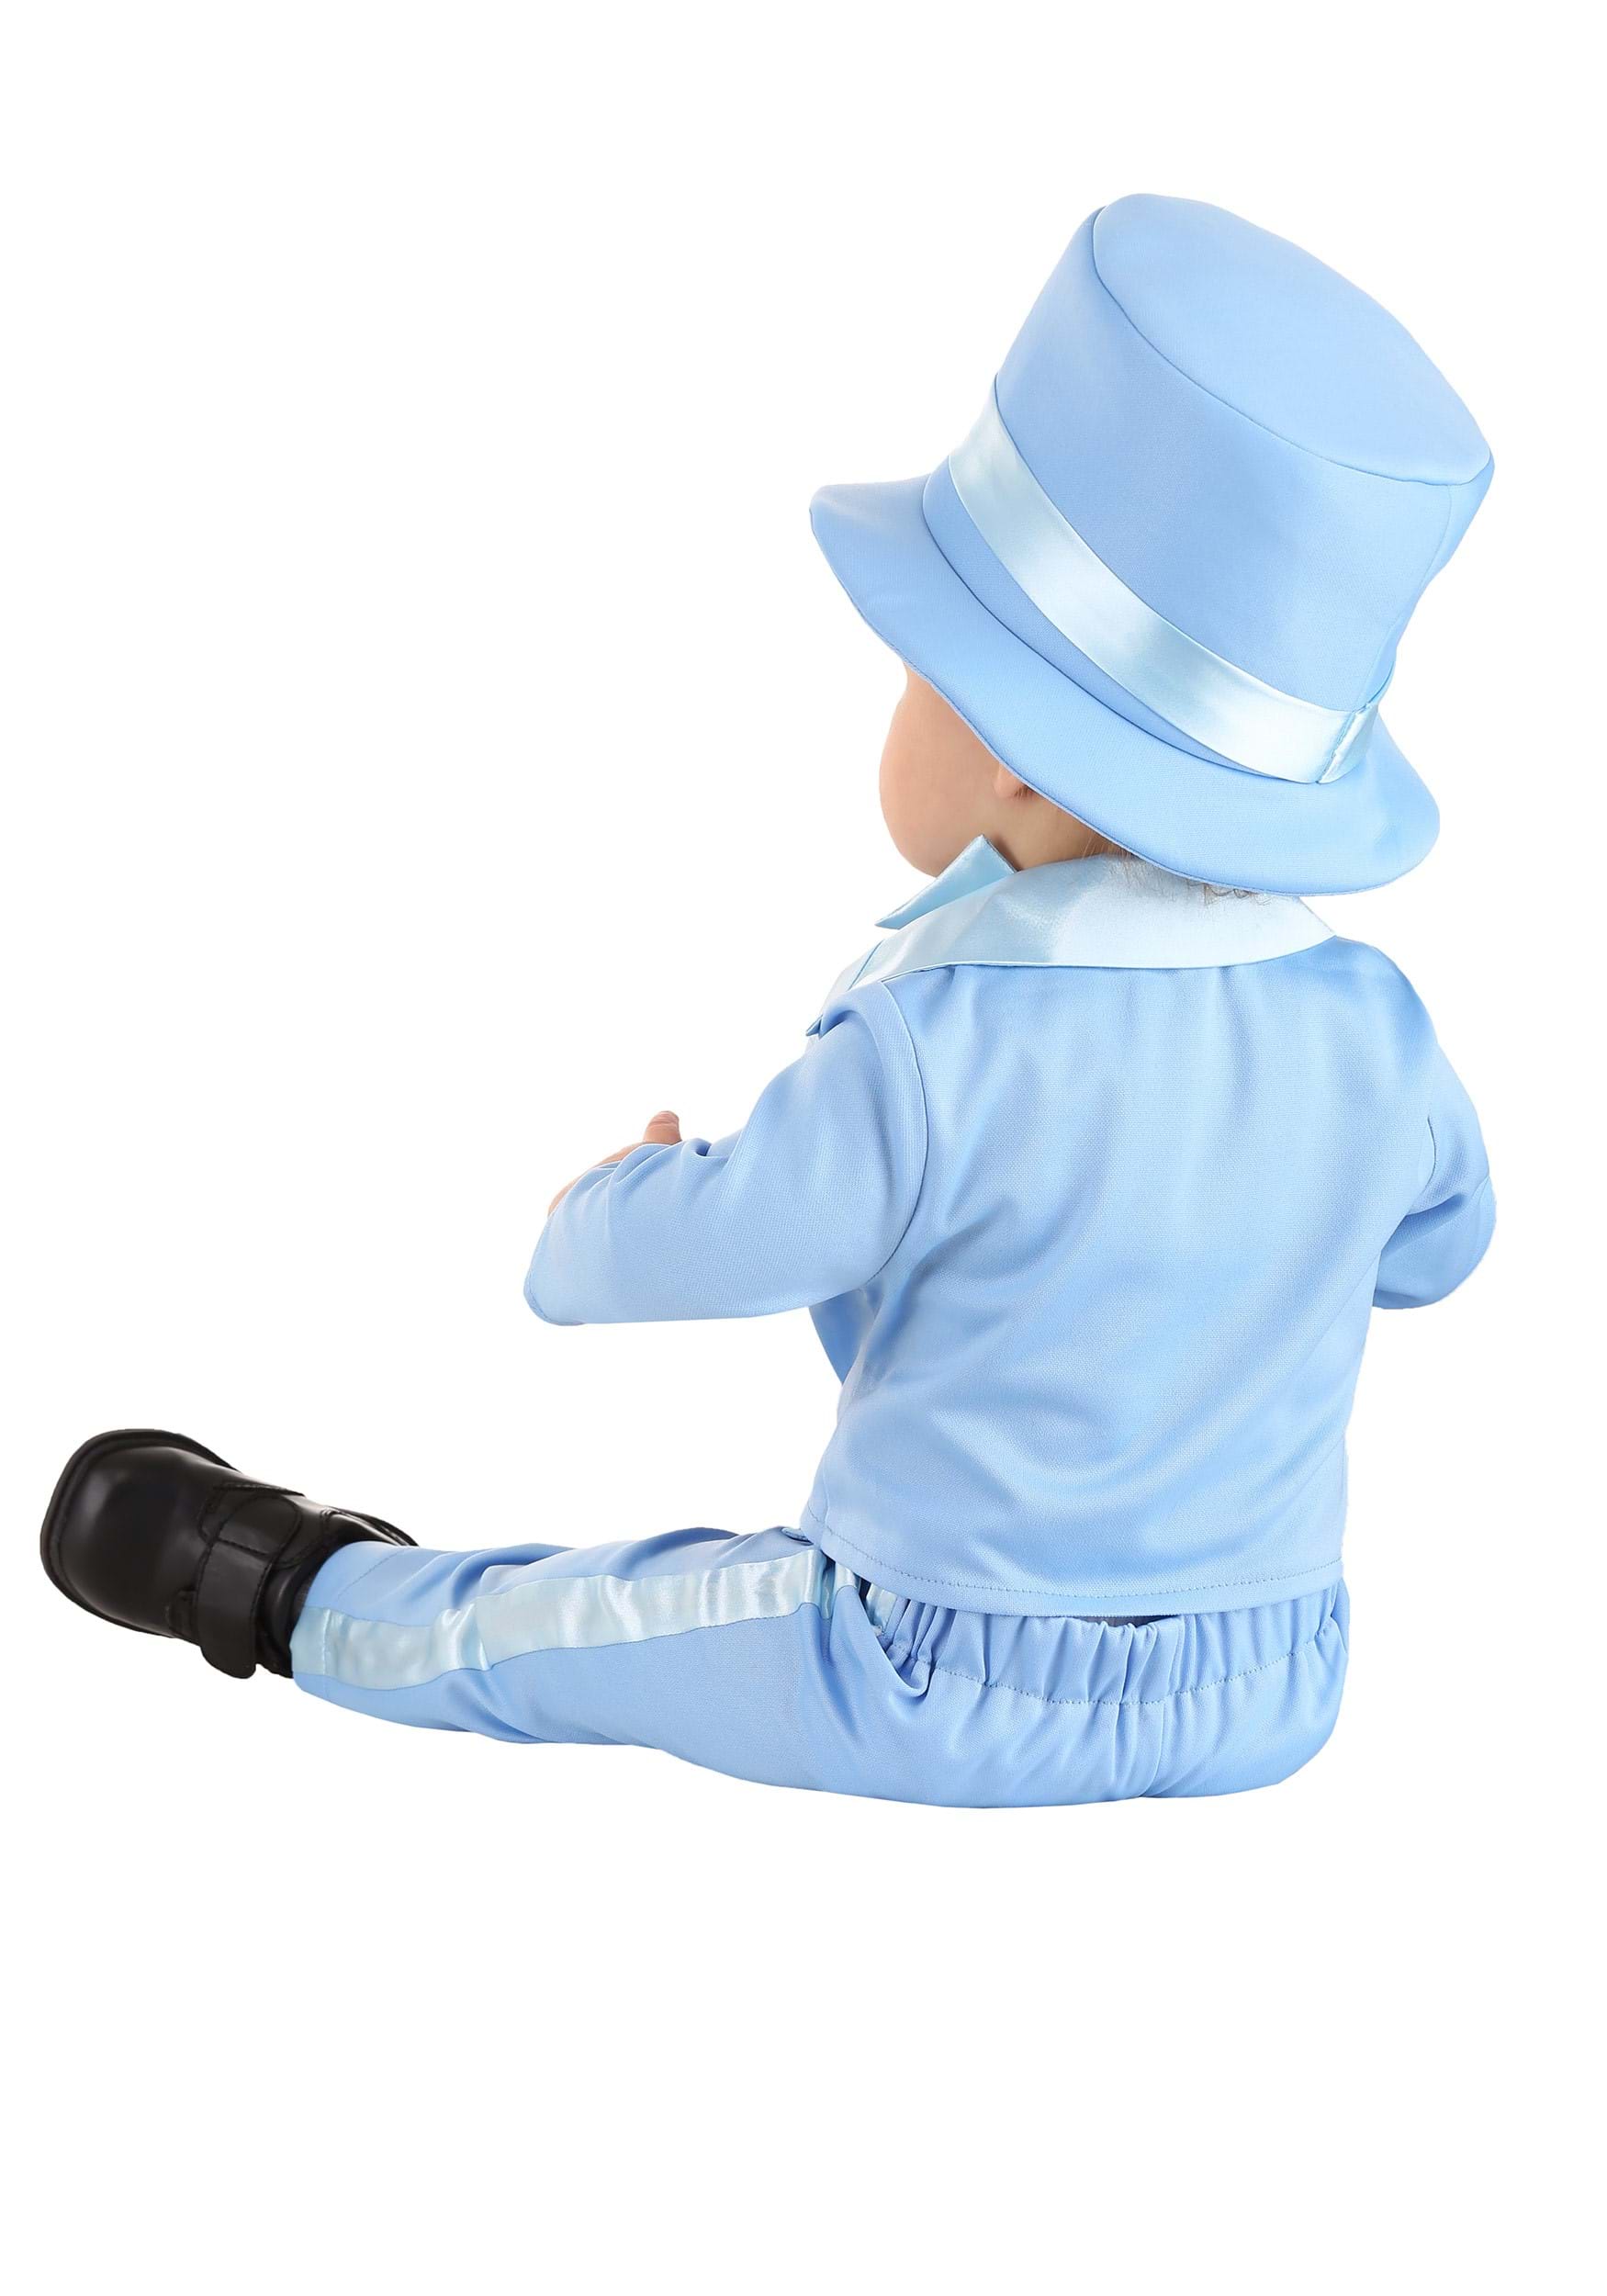 Infant Powder Blue Suit Costume